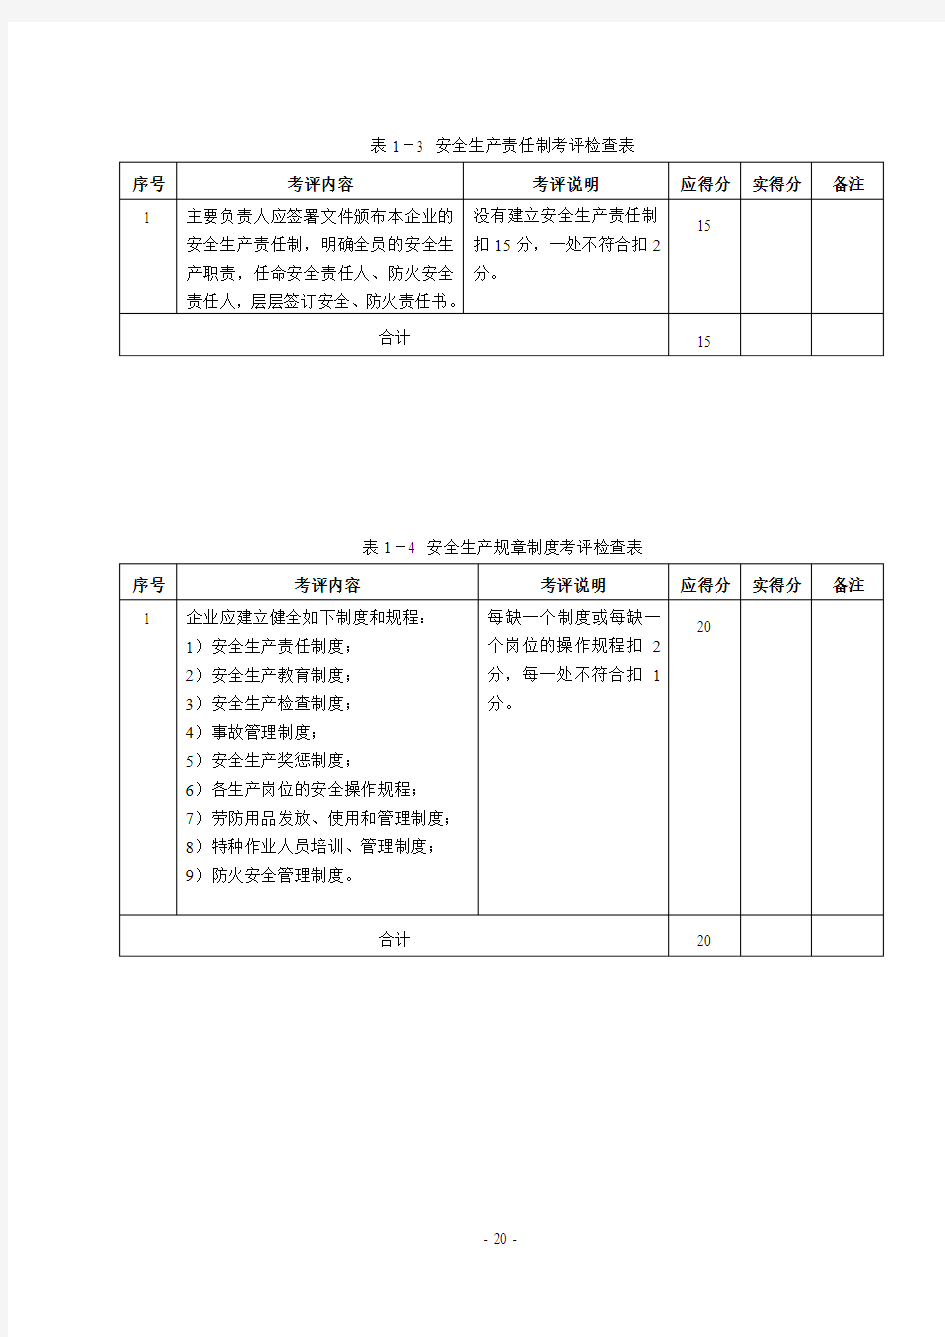 广州市家具制造企业安全生产标准化达标考评检查表